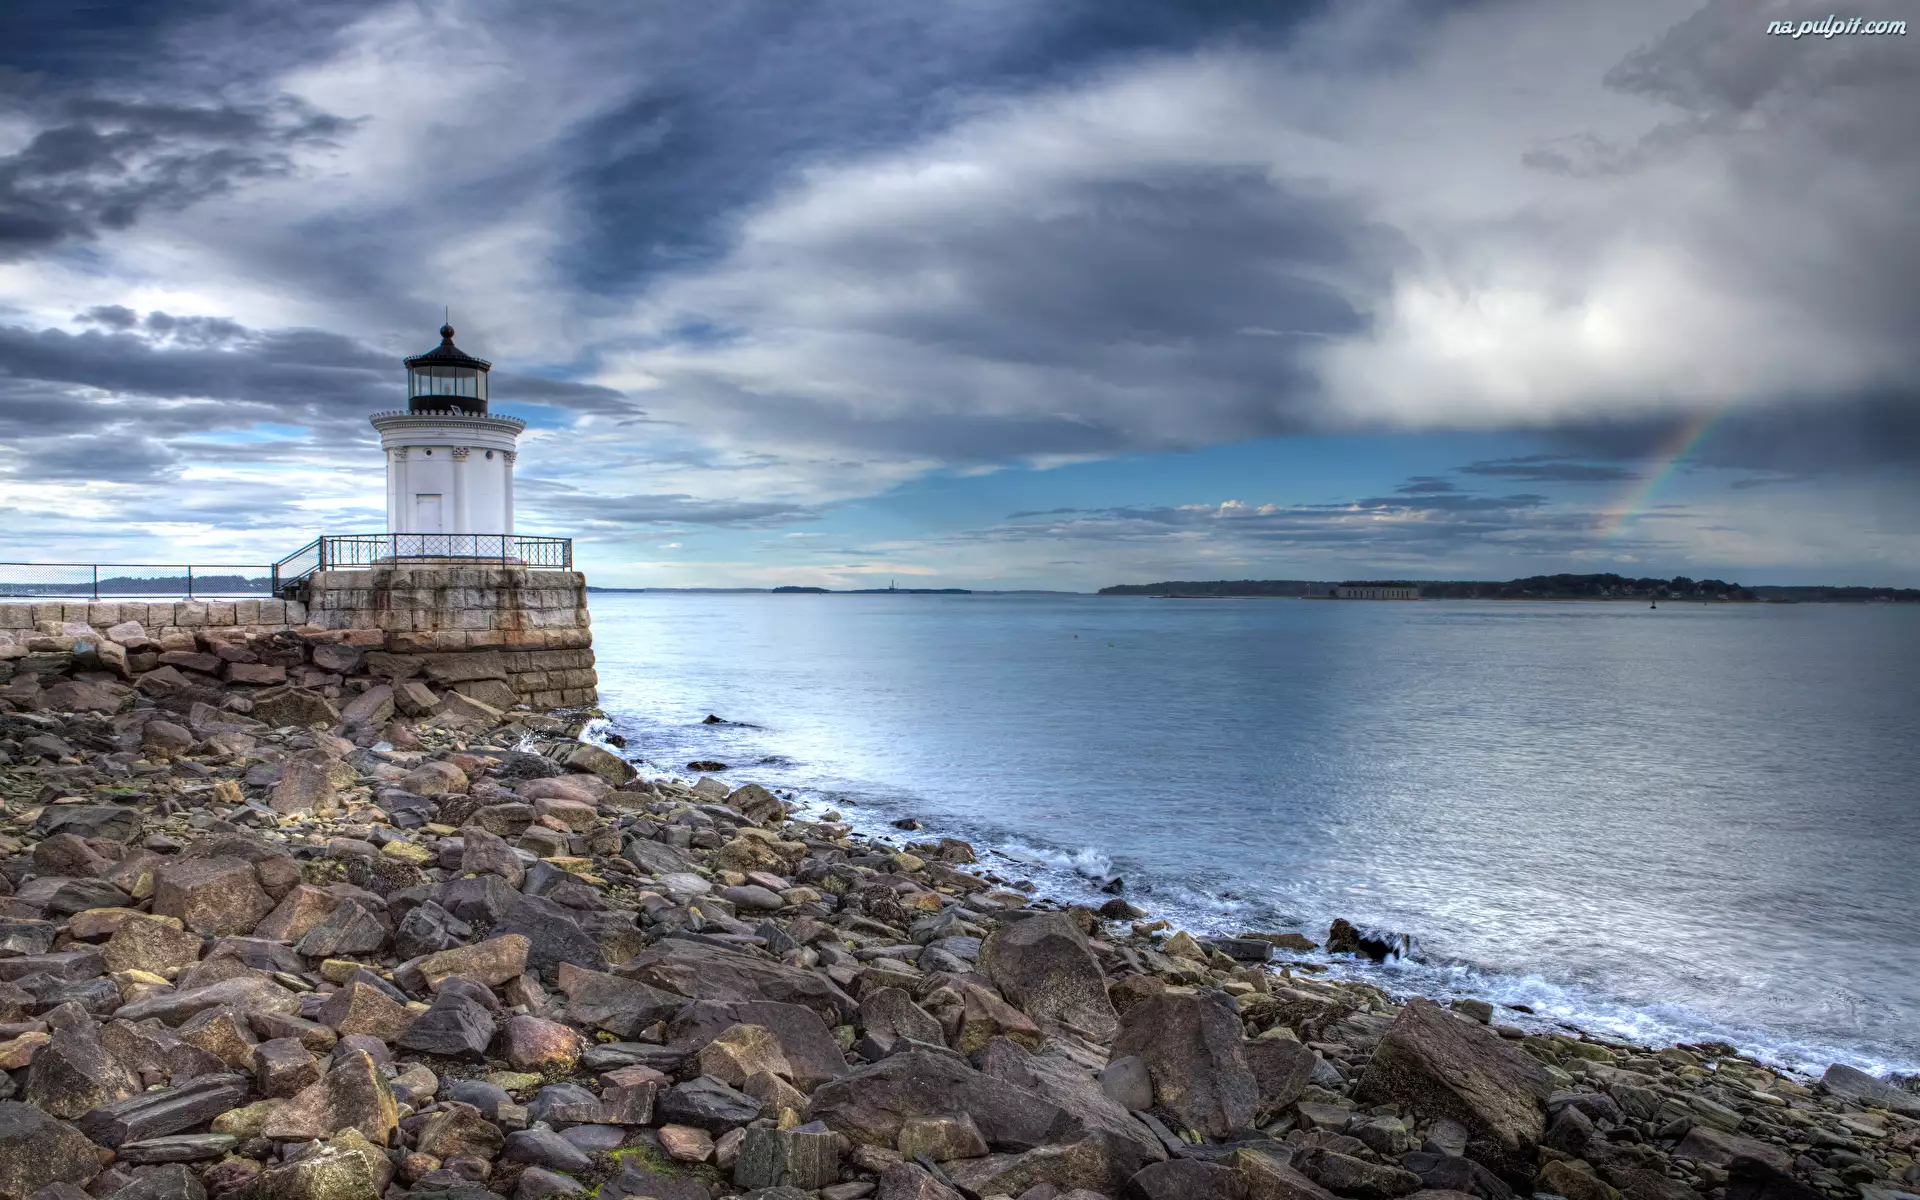 Stan Maine, Stany Zjednoczone, Kamienie, Tęcza, Latarnia morska Portland Breakwater Light, Morze